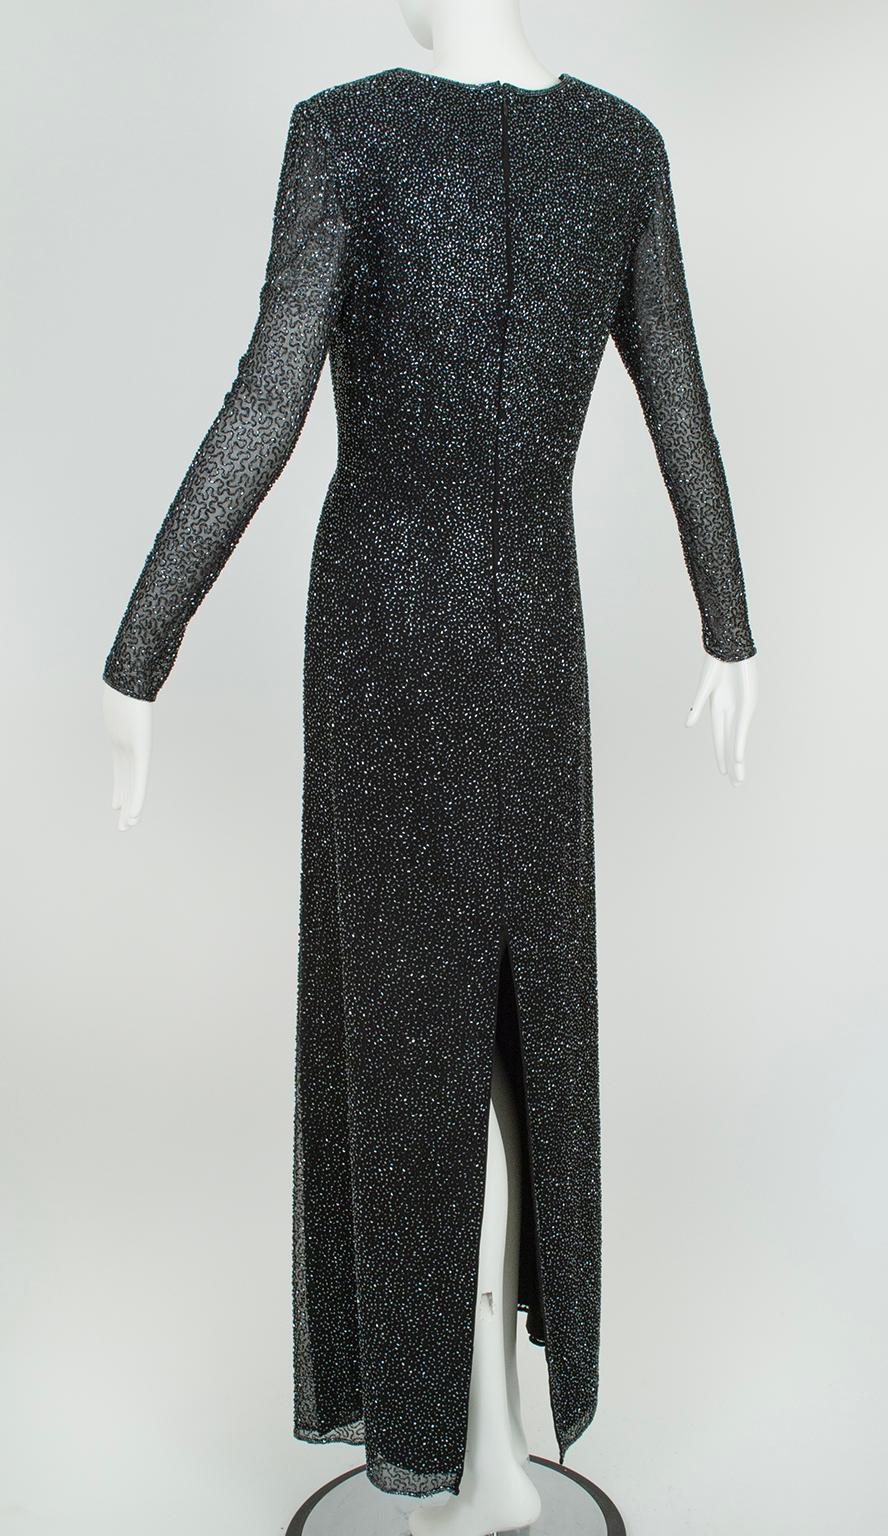 Women's Lillie Rubin Black Full Length Beaded Column Gown w Illusion Sleeves – L, 21st C For Sale